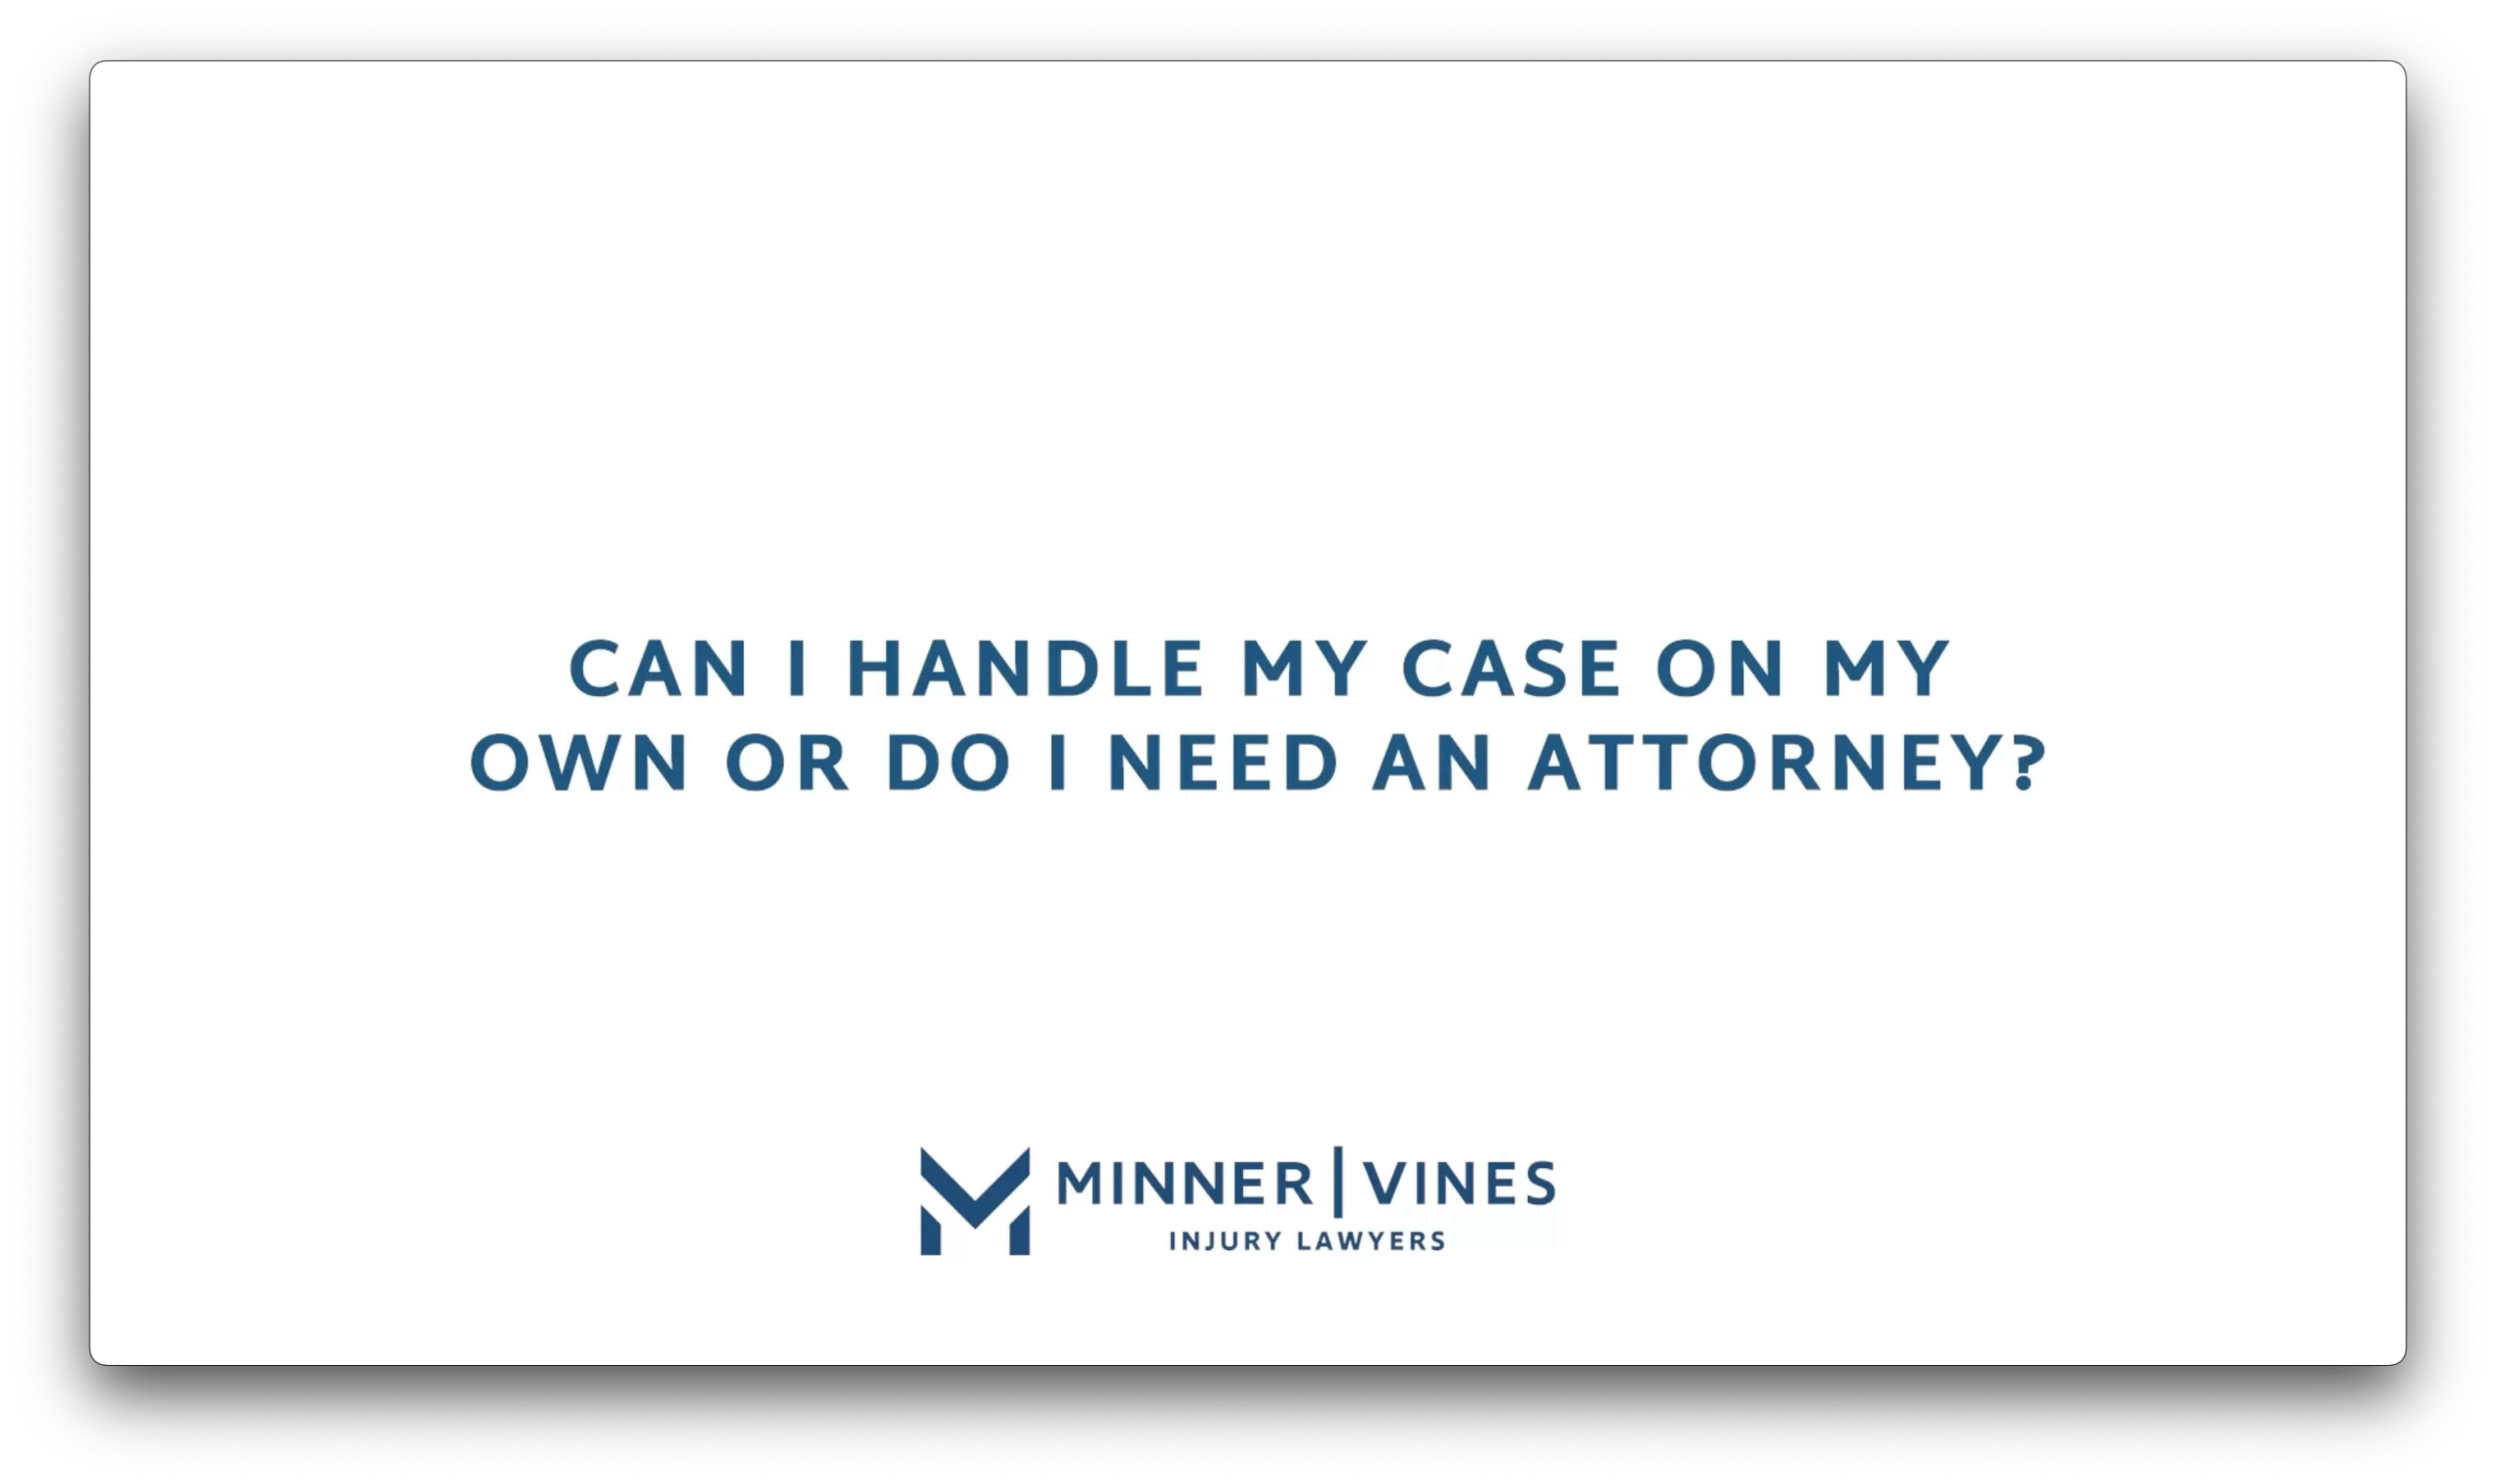 Can I handle my case on my own or do I need an attorney?